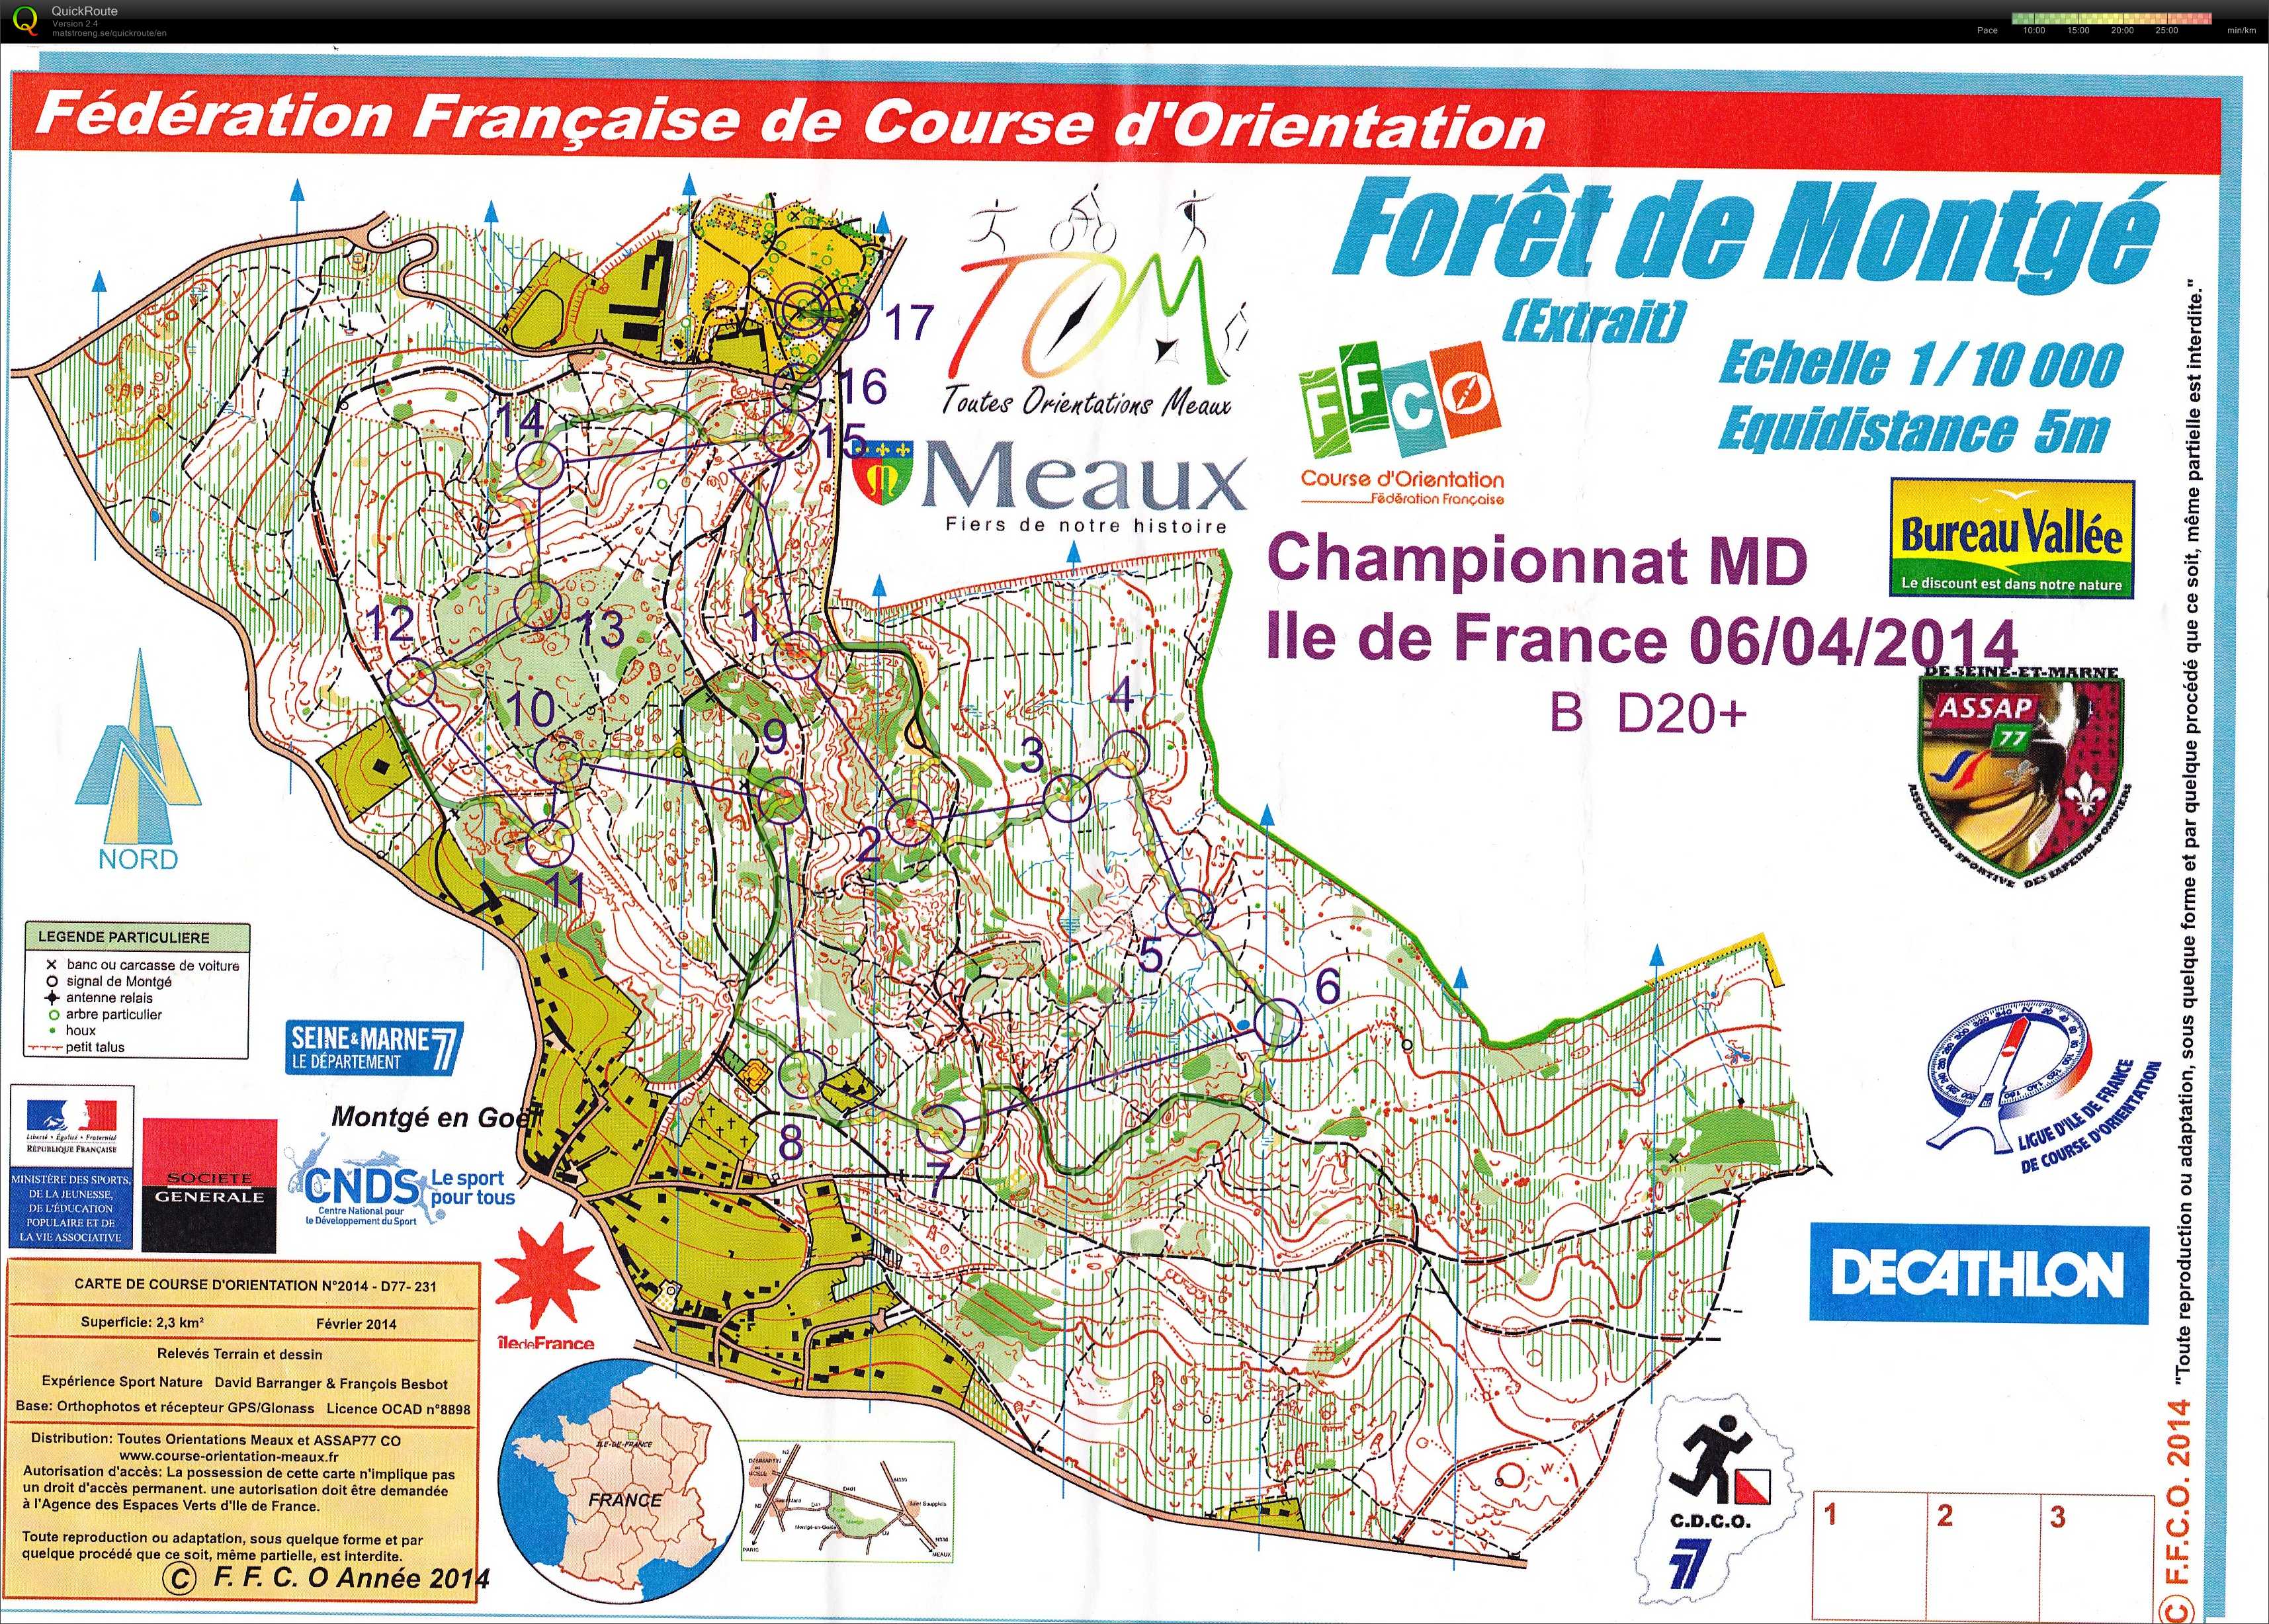 Championnats d'Ile de France Moyenne Distance (06/04/2014)